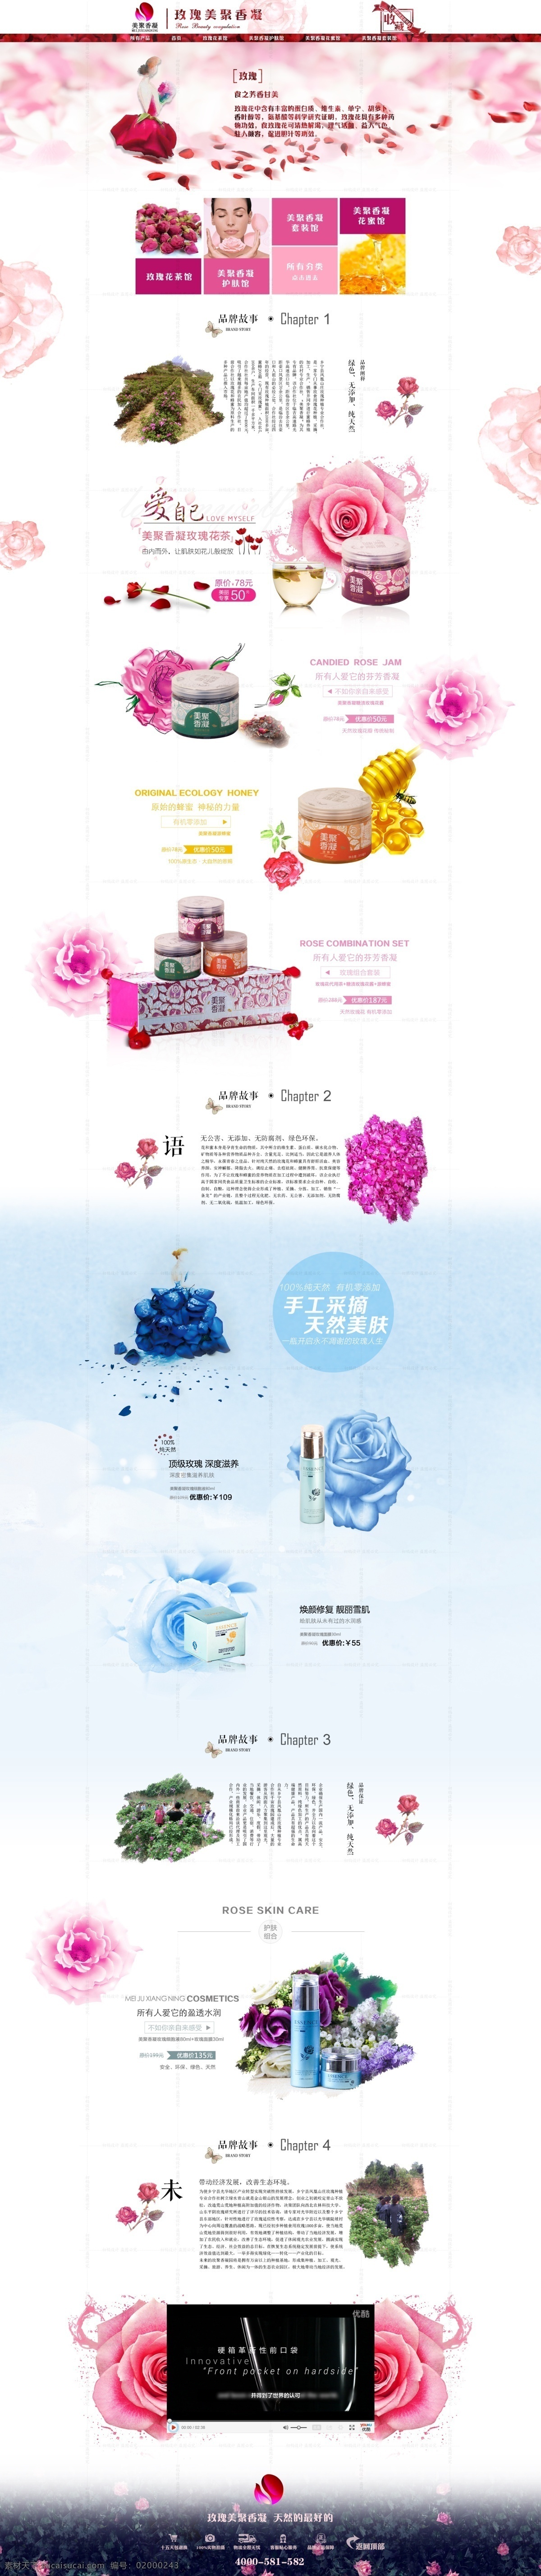 玫瑰花 类 产品 首页 蜂蜜 小清新 粉蓝色 美妆洗护 淘宝首页模板